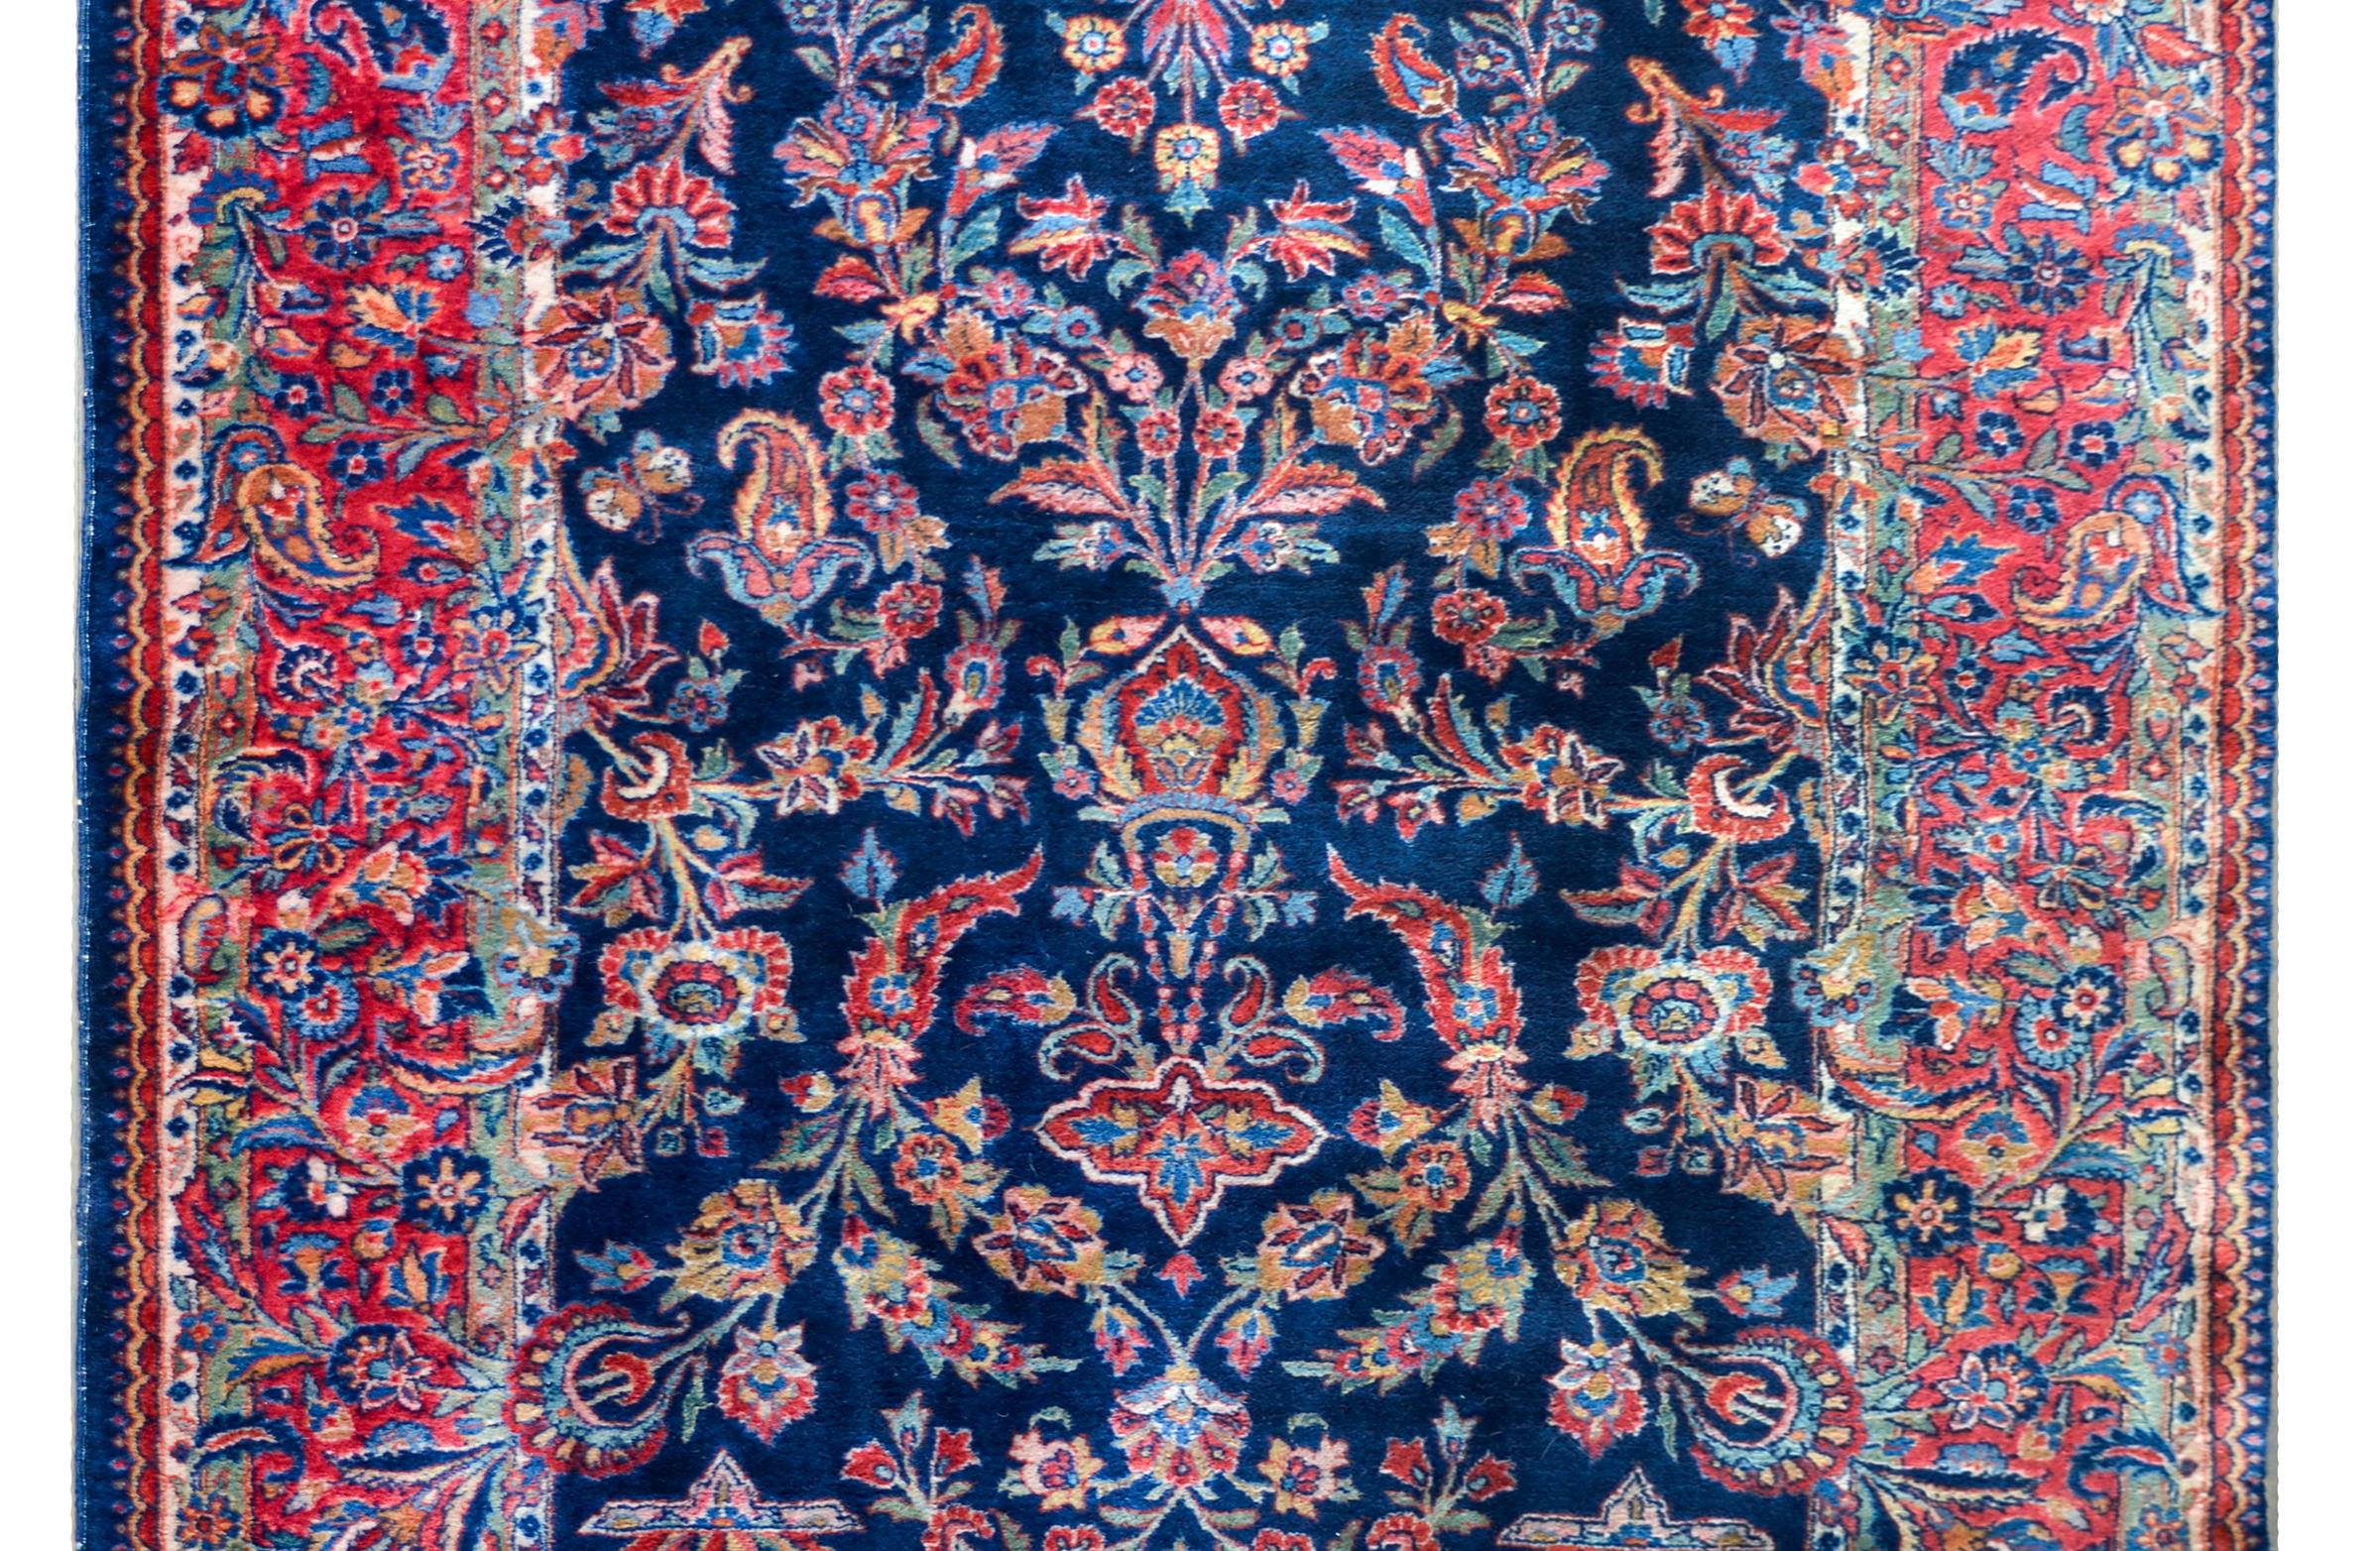 Ein persischer Kaschan-Teppich aus dem frühen 20. Jahrhundert mit einem spiegelnden Muster aus unzähligen Blumen in Rot-, Blau-, Gold- und Grüntönen auf einem dunklen indigoblauen Hintergrund. Die Umrandung ist fantastisch komponiert und besteht aus